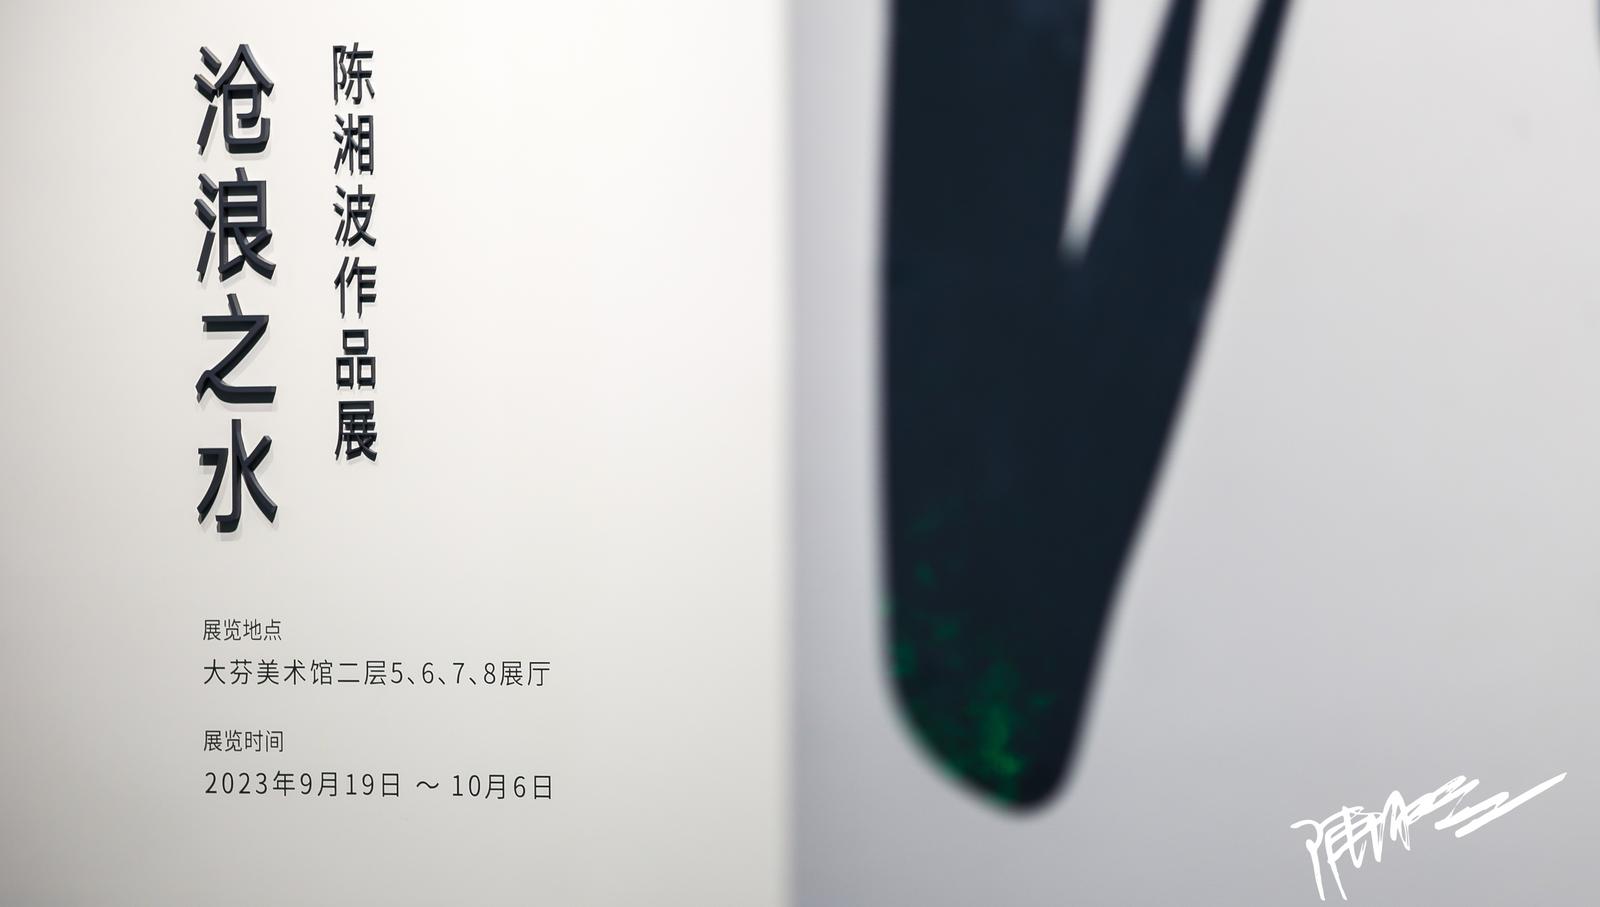 “沧浪之水——陈湘波作品展”在大芬美术馆展出 潮玩“啵啵龙”首发